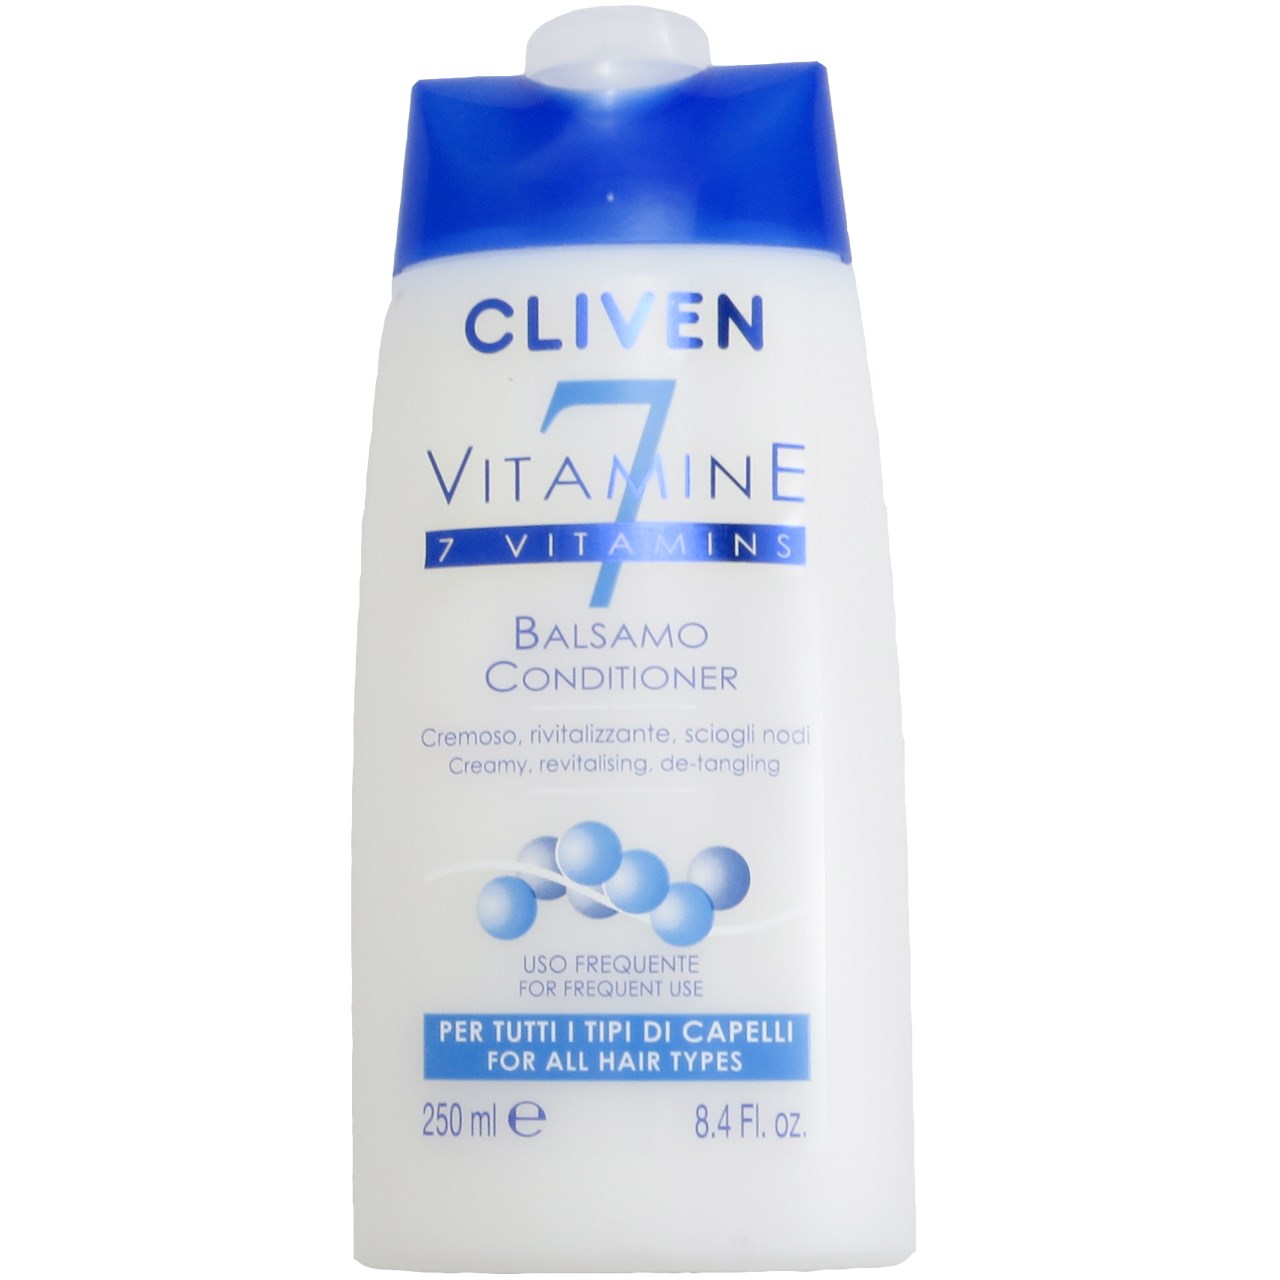 نرم کننده مو کلیون مدل 7 Vitamin حجم 250 میلی لیتر مخصوص انواع مو